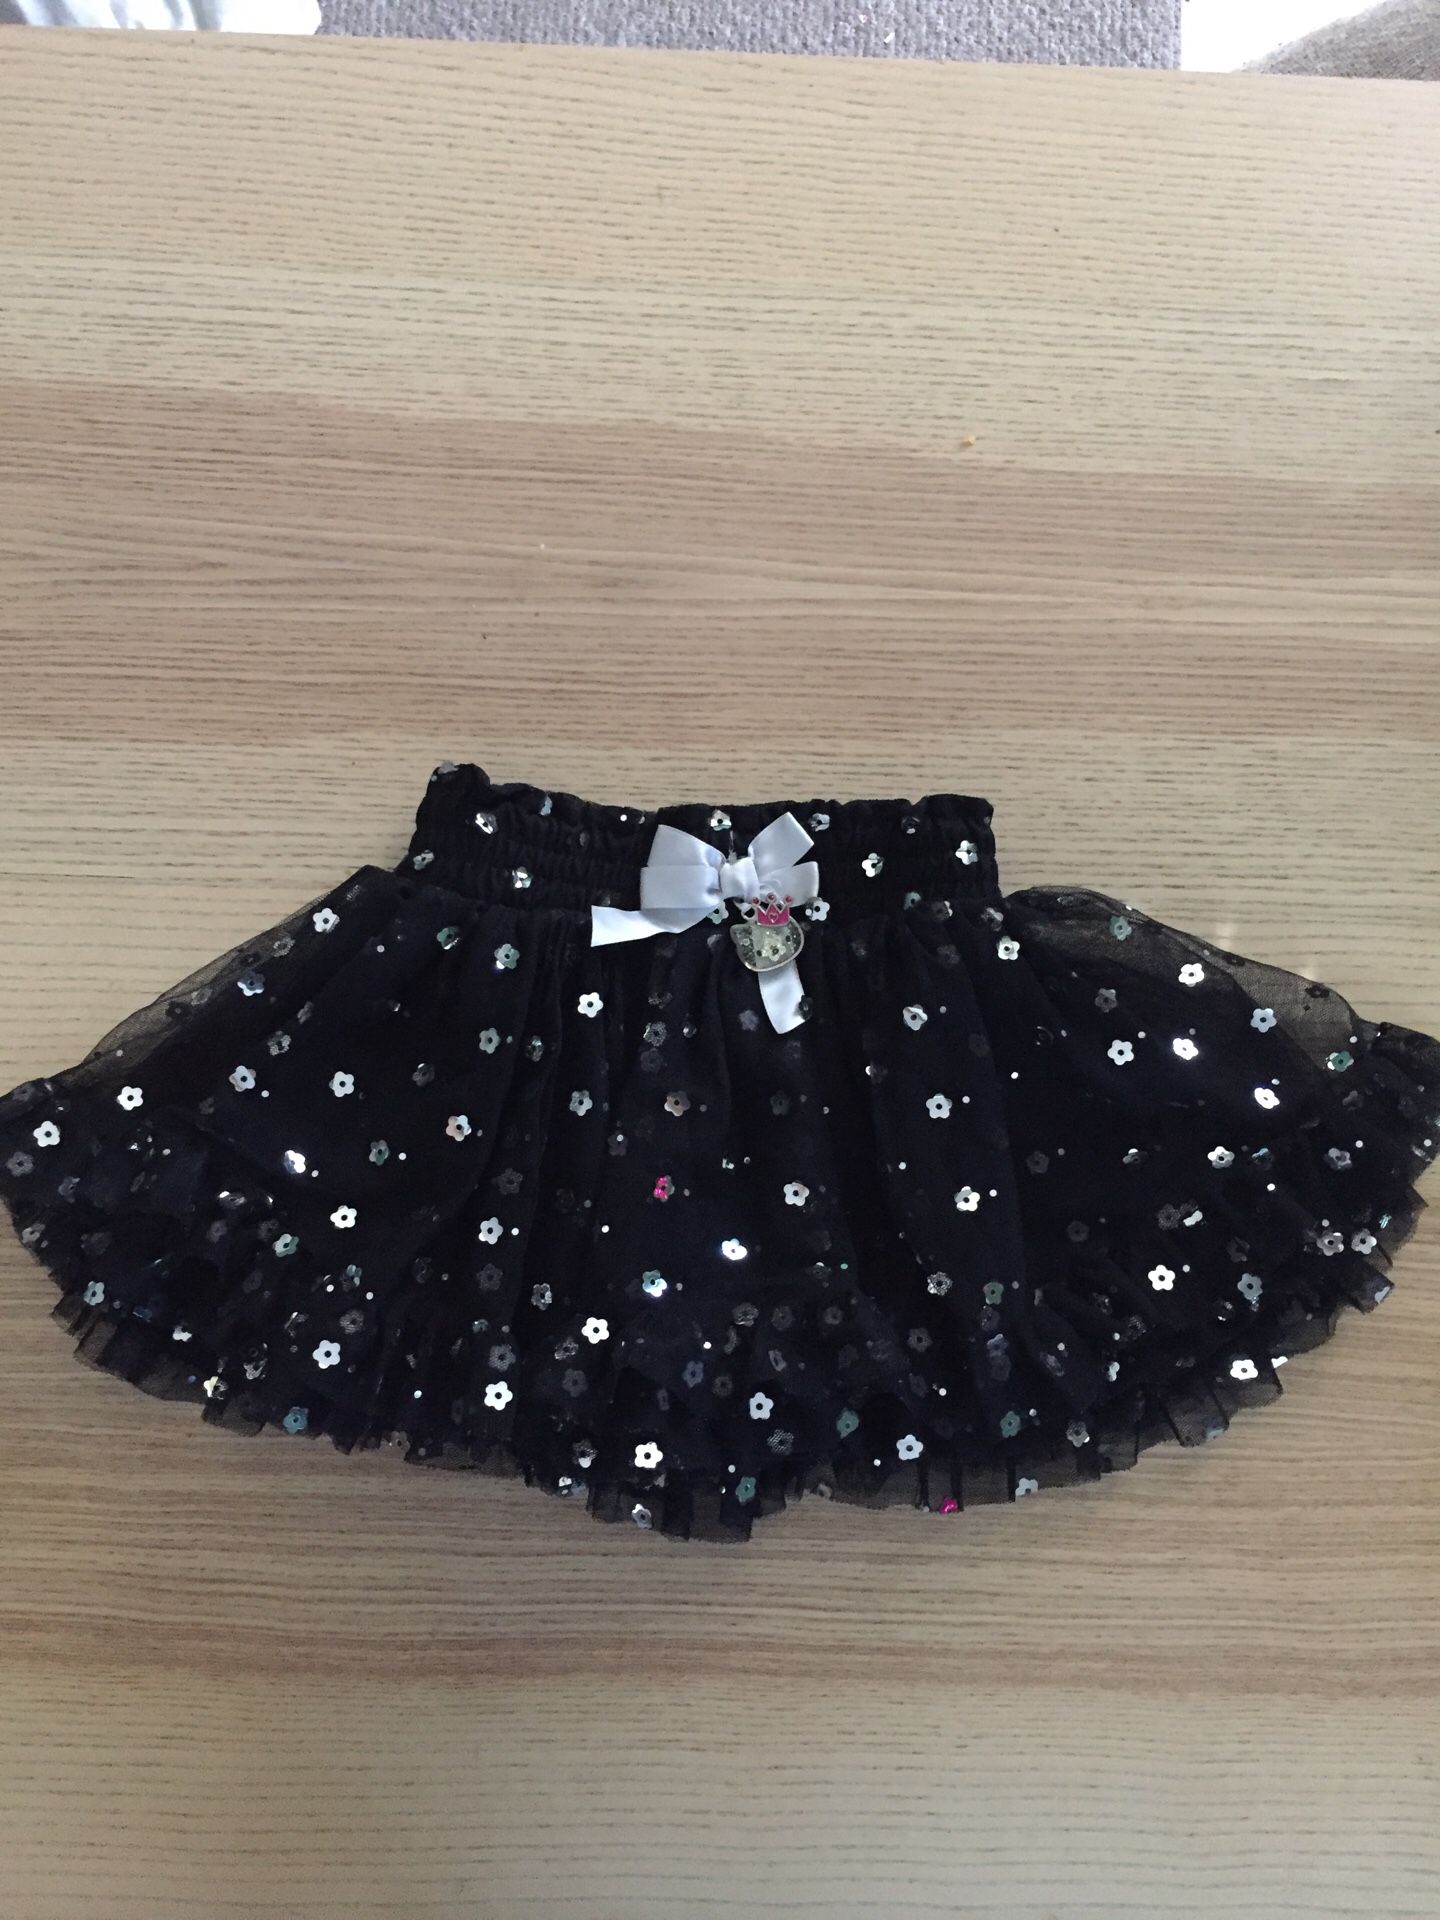 Hello Kitty Black Skirt size 2-3T Halloween